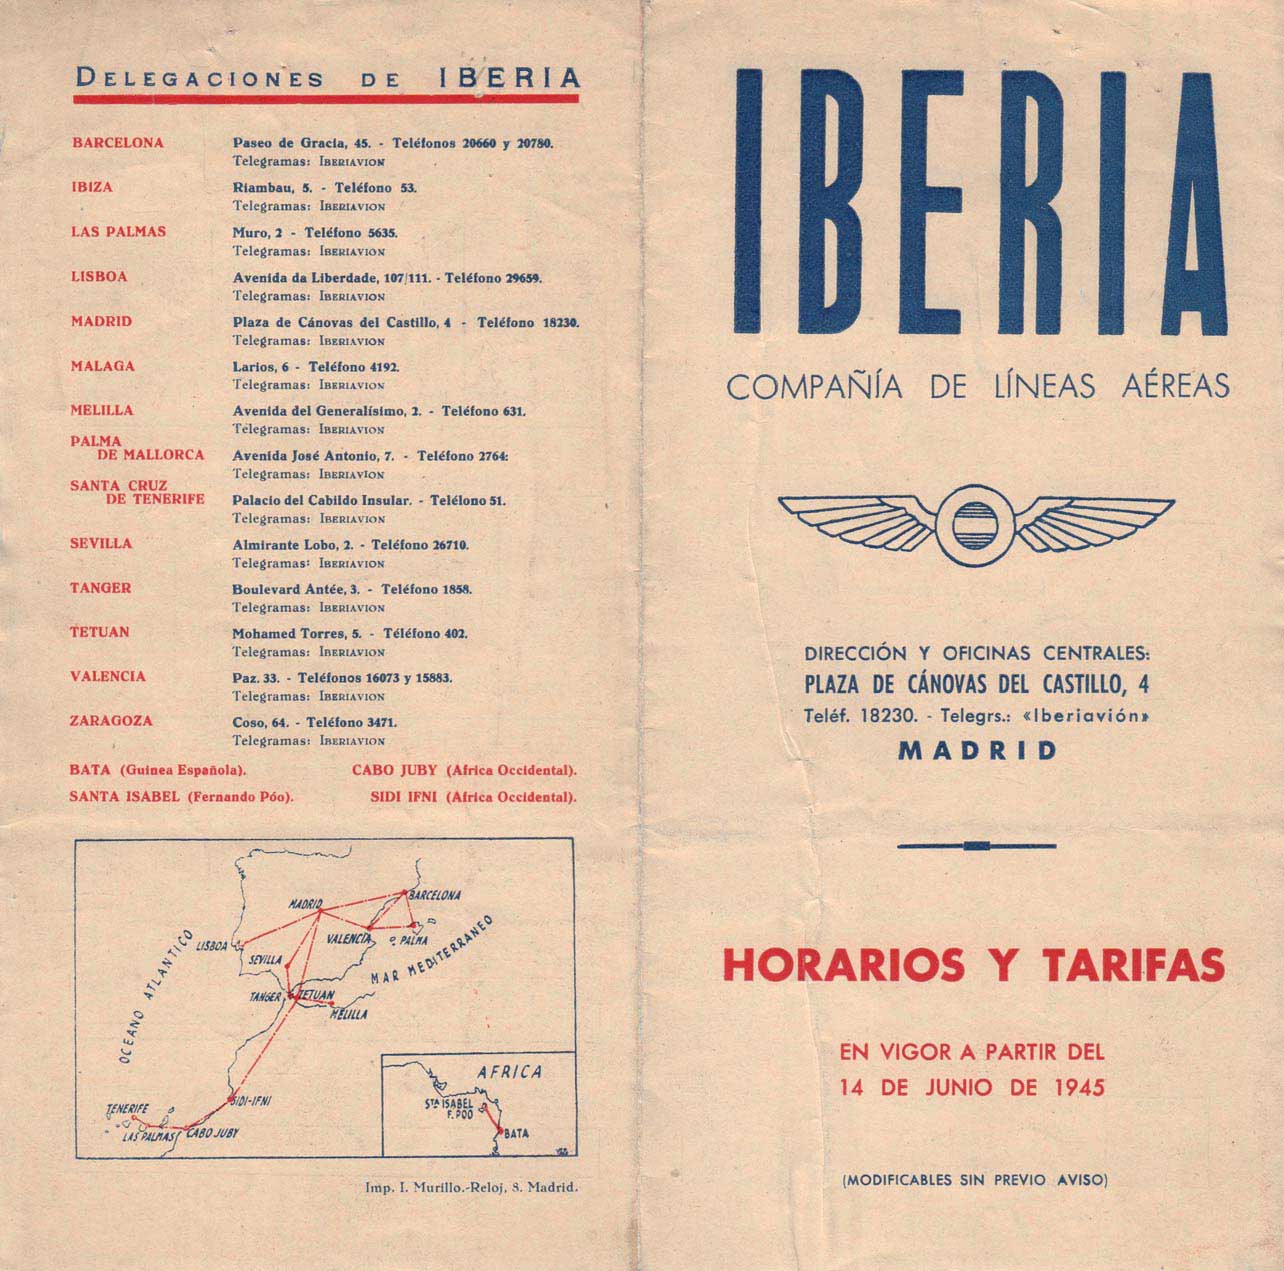 Portada de Tabla de horarios y tarifas de Iberia, de 1945. Colección de Diederik R. Vels Heijn.